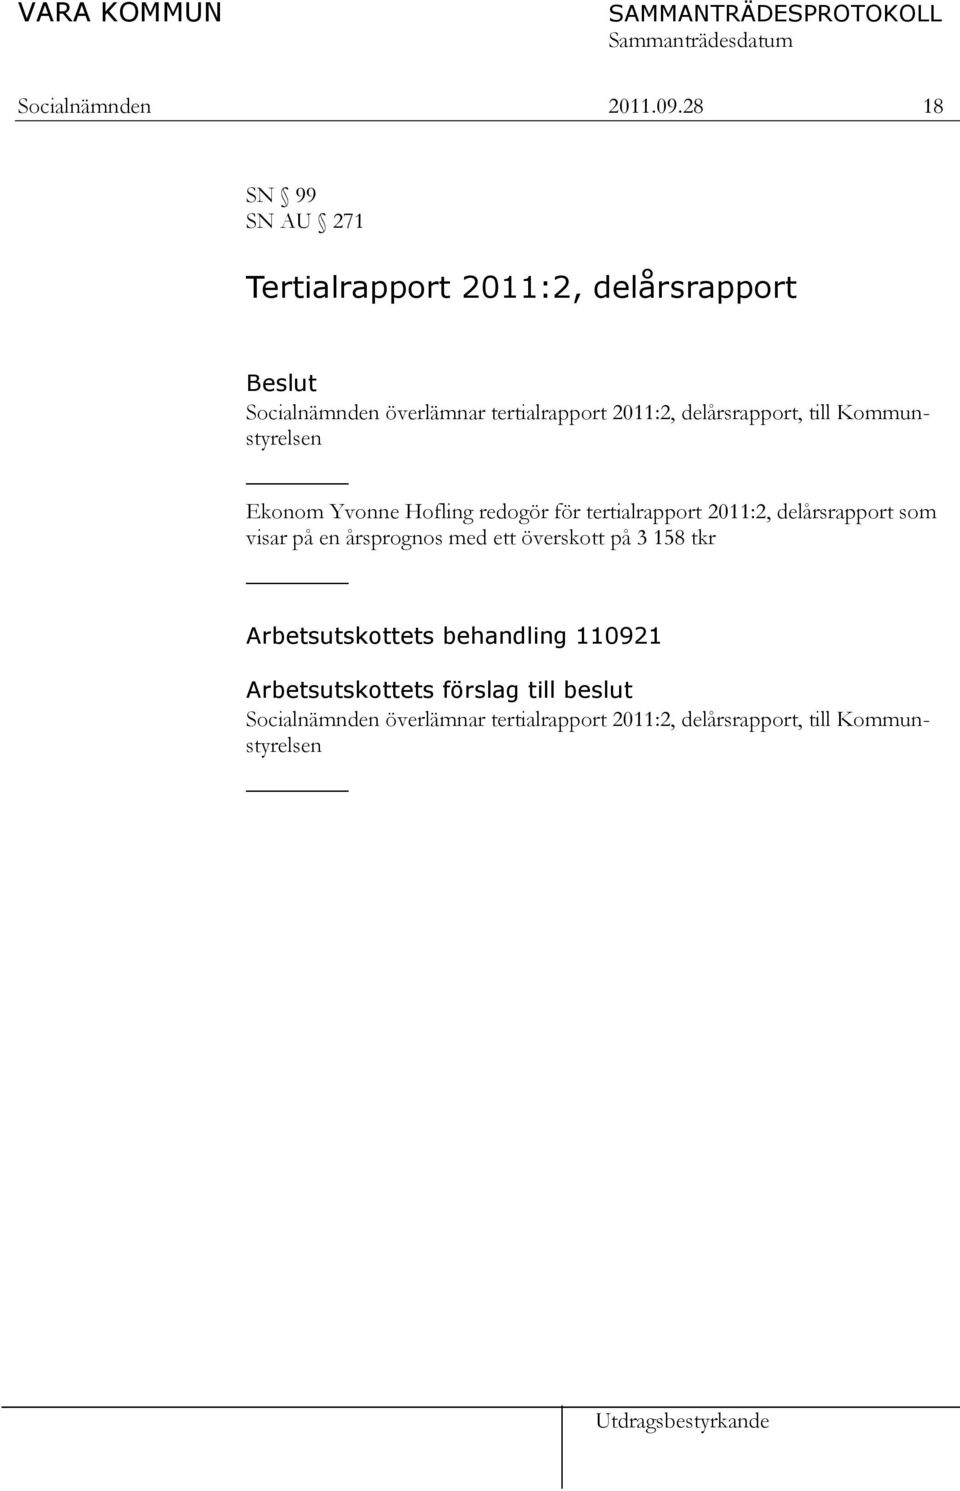 delårsrapport, till Kommunstyrelsen Ekonom Yvonne Hofling redogör för tertialrapport 2011:2, delårsrapport som